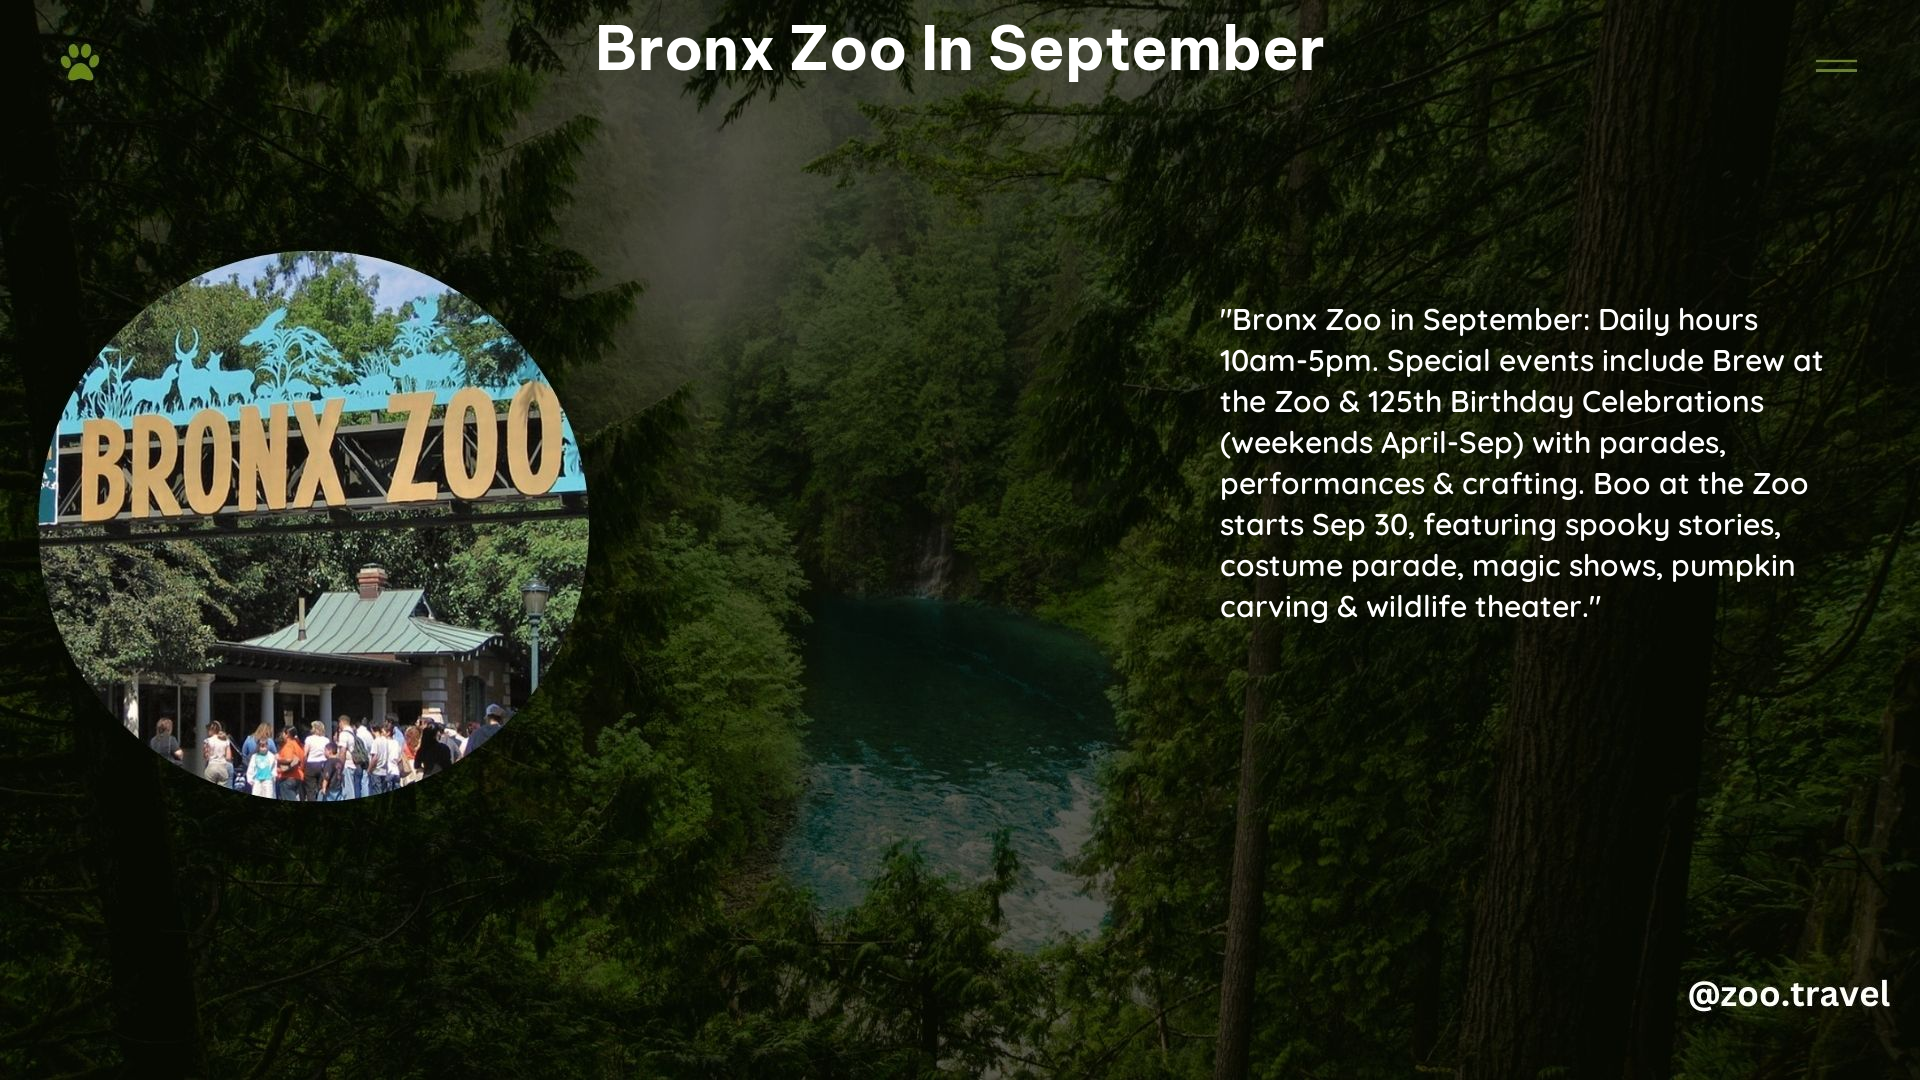 Bronx Zoo in September